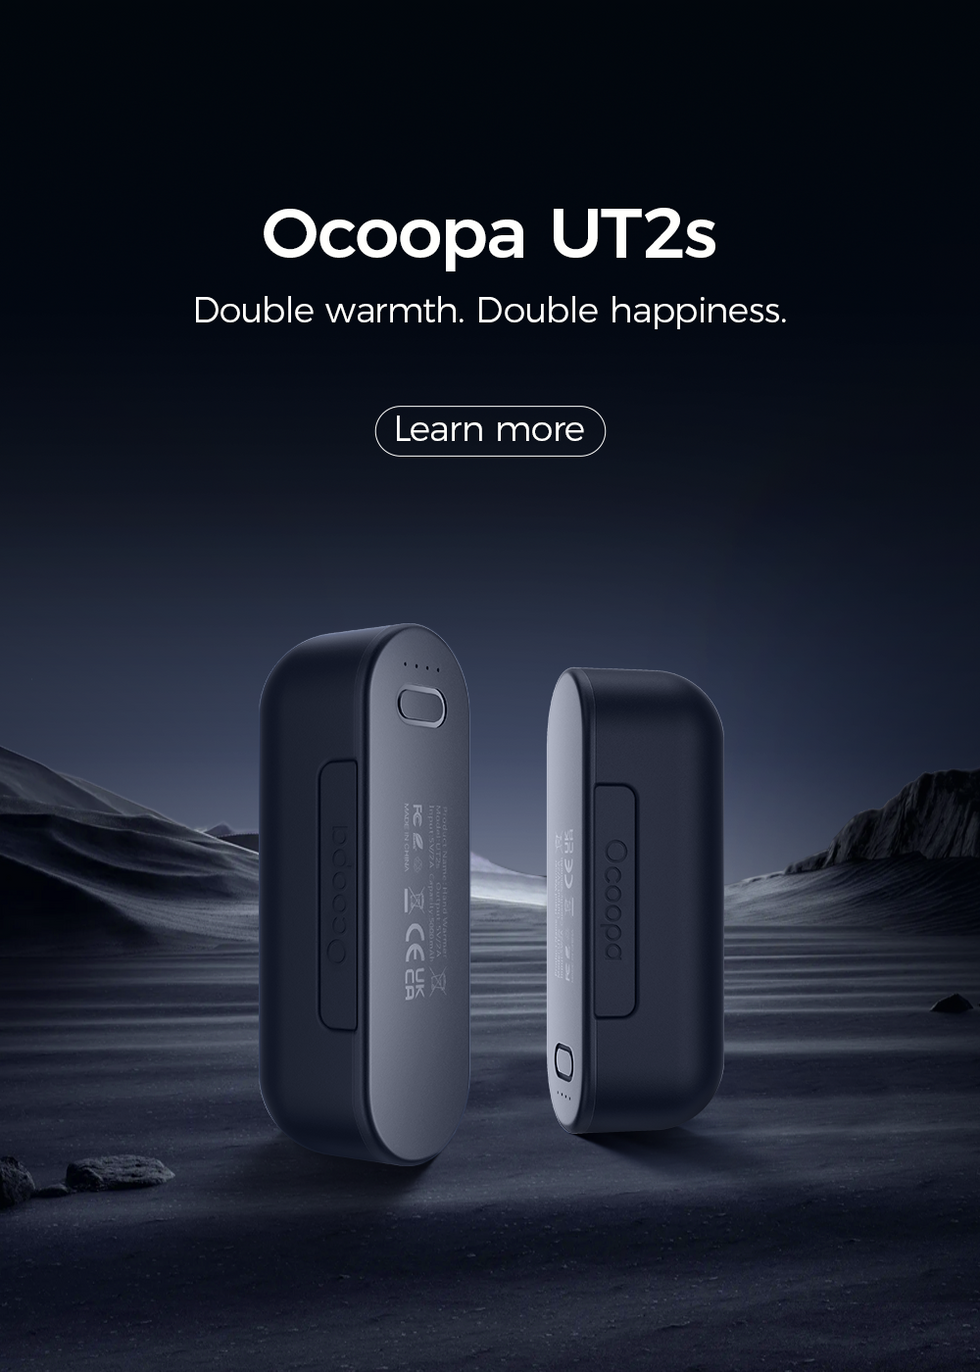 Ocoopa 118S - Chauffe-mains avec batterie externe